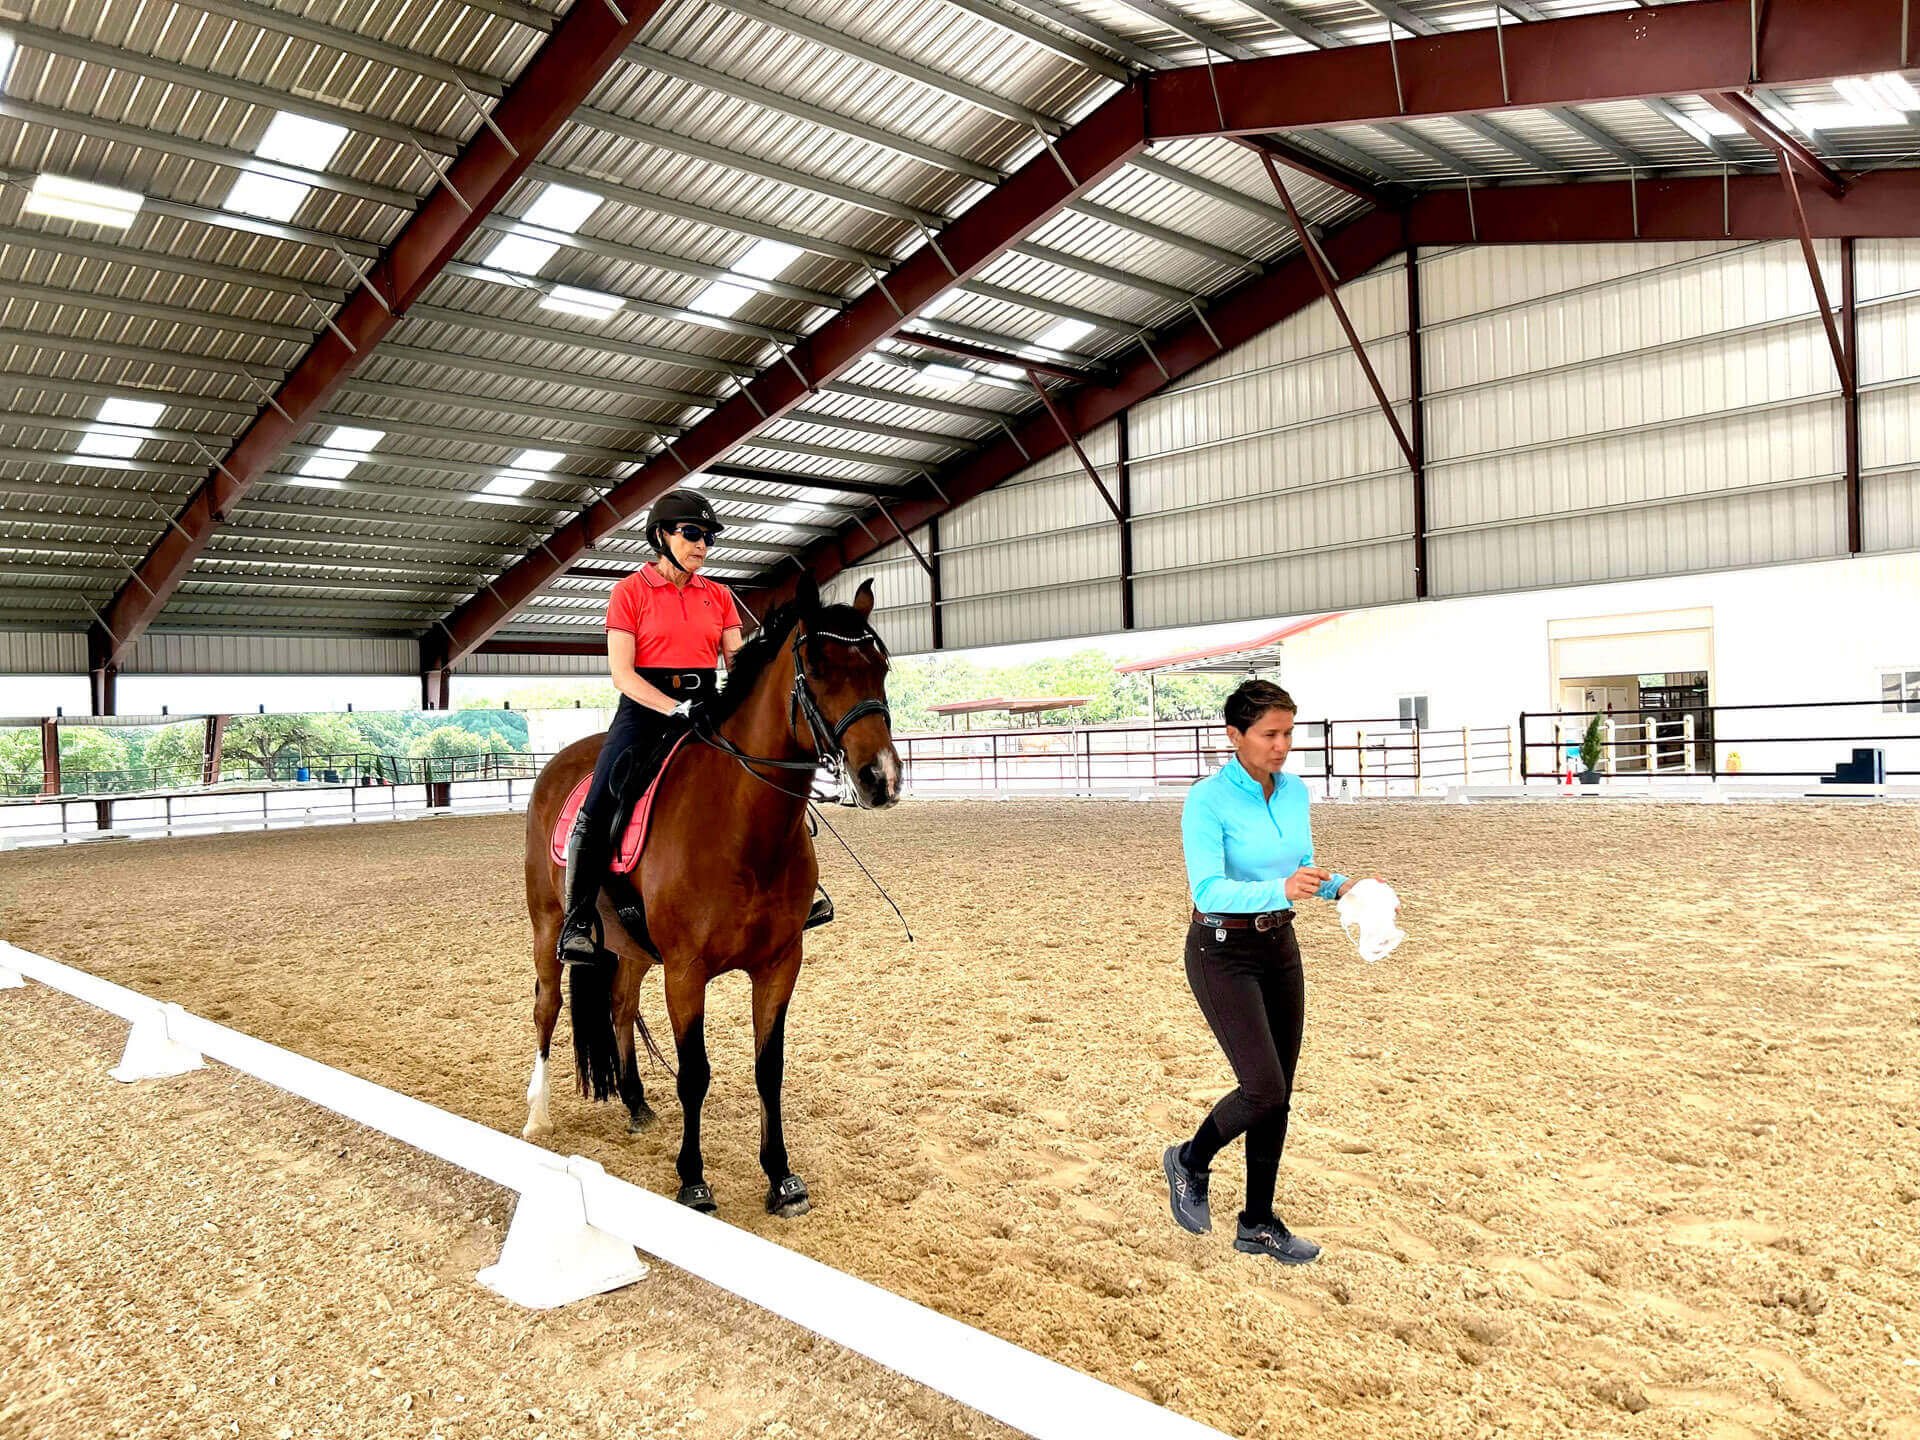 Clinic Event at Fair Oaks Equestrian Center, Fair Oaks Ranch near San Antonio, Texas